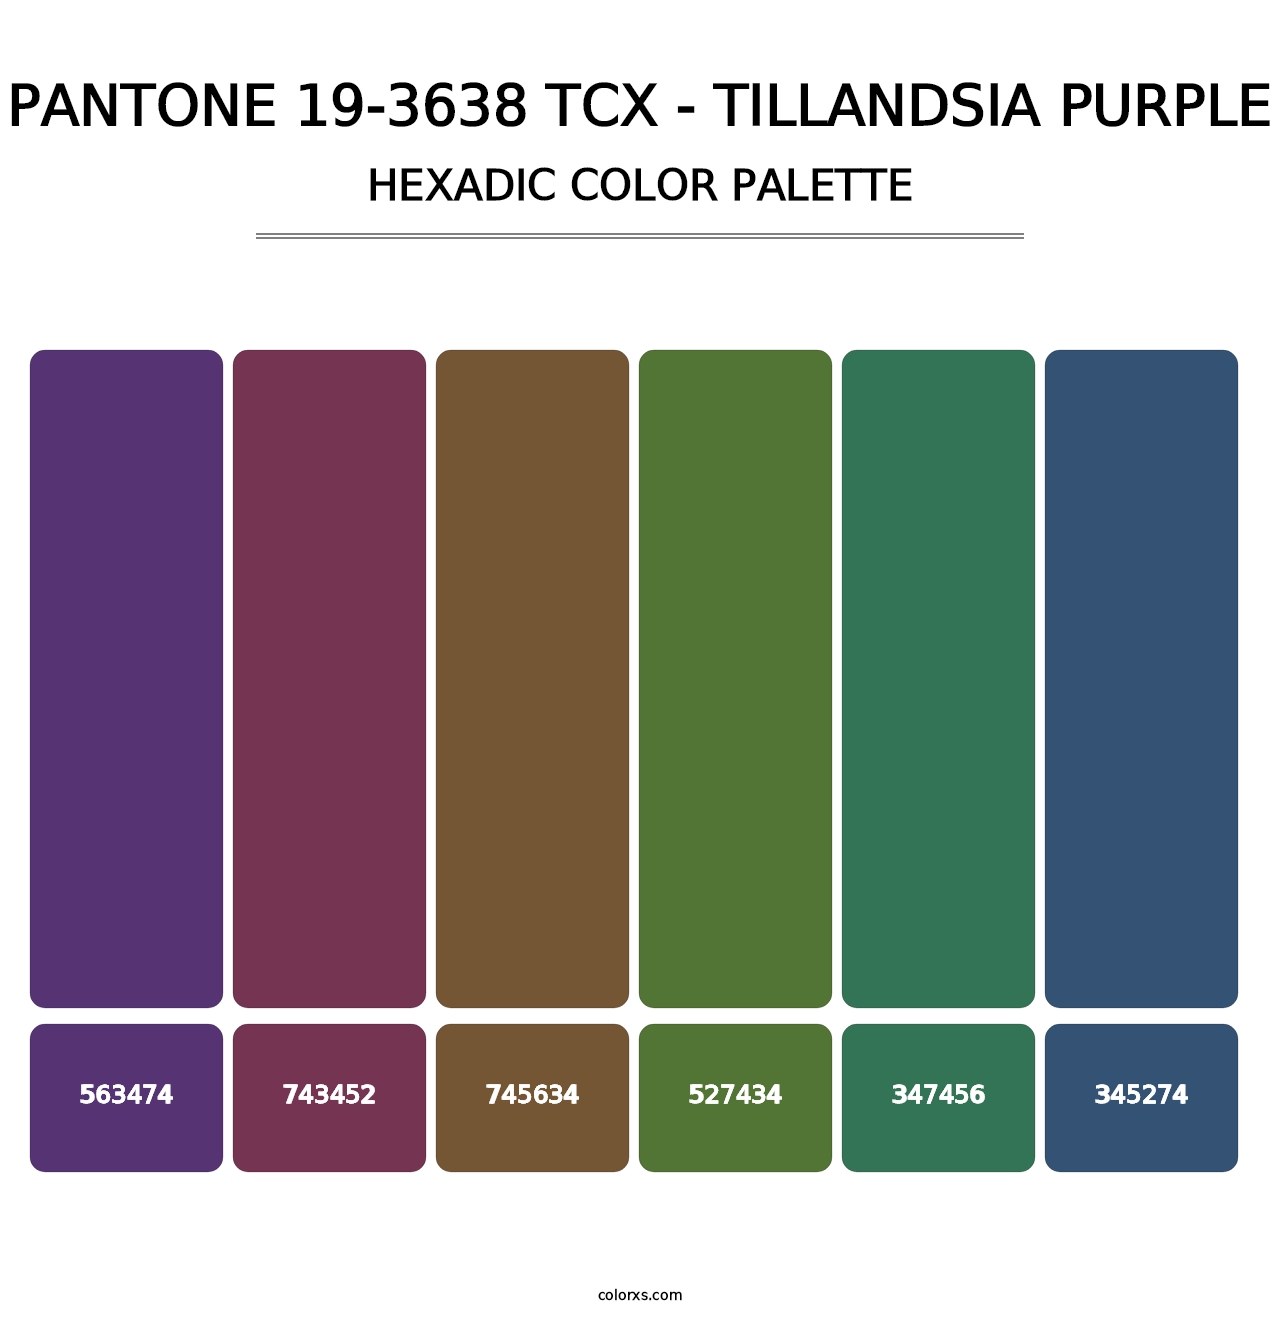 PANTONE 19-3638 TCX - Tillandsia Purple - Hexadic Color Palette